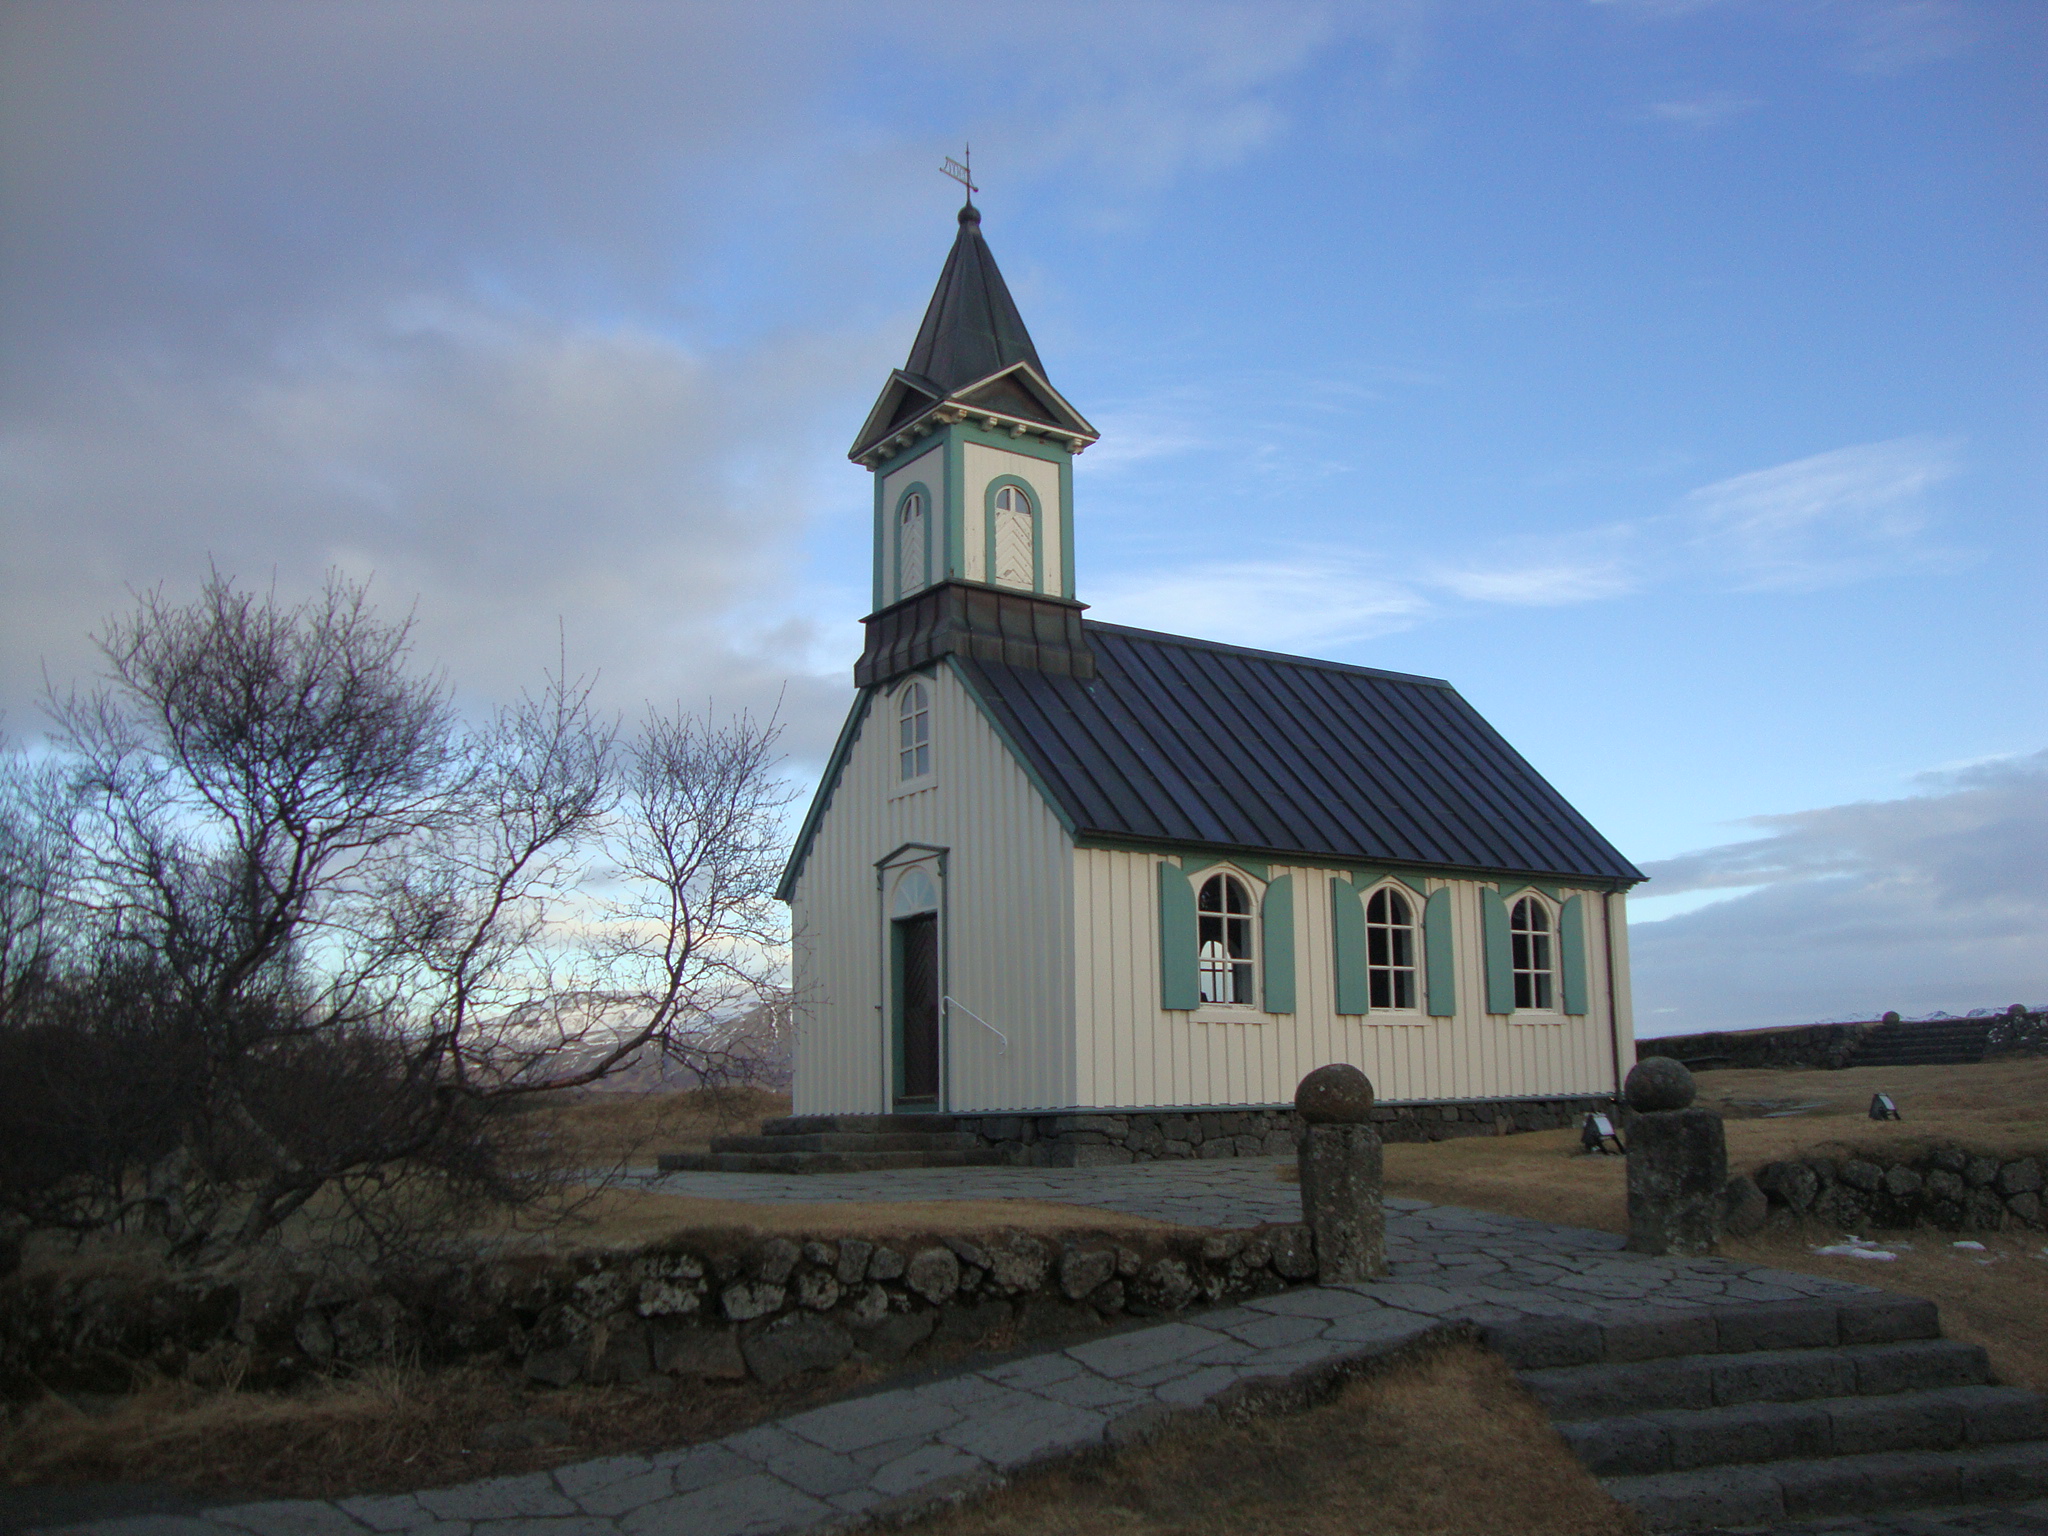 A cute little church in the Park